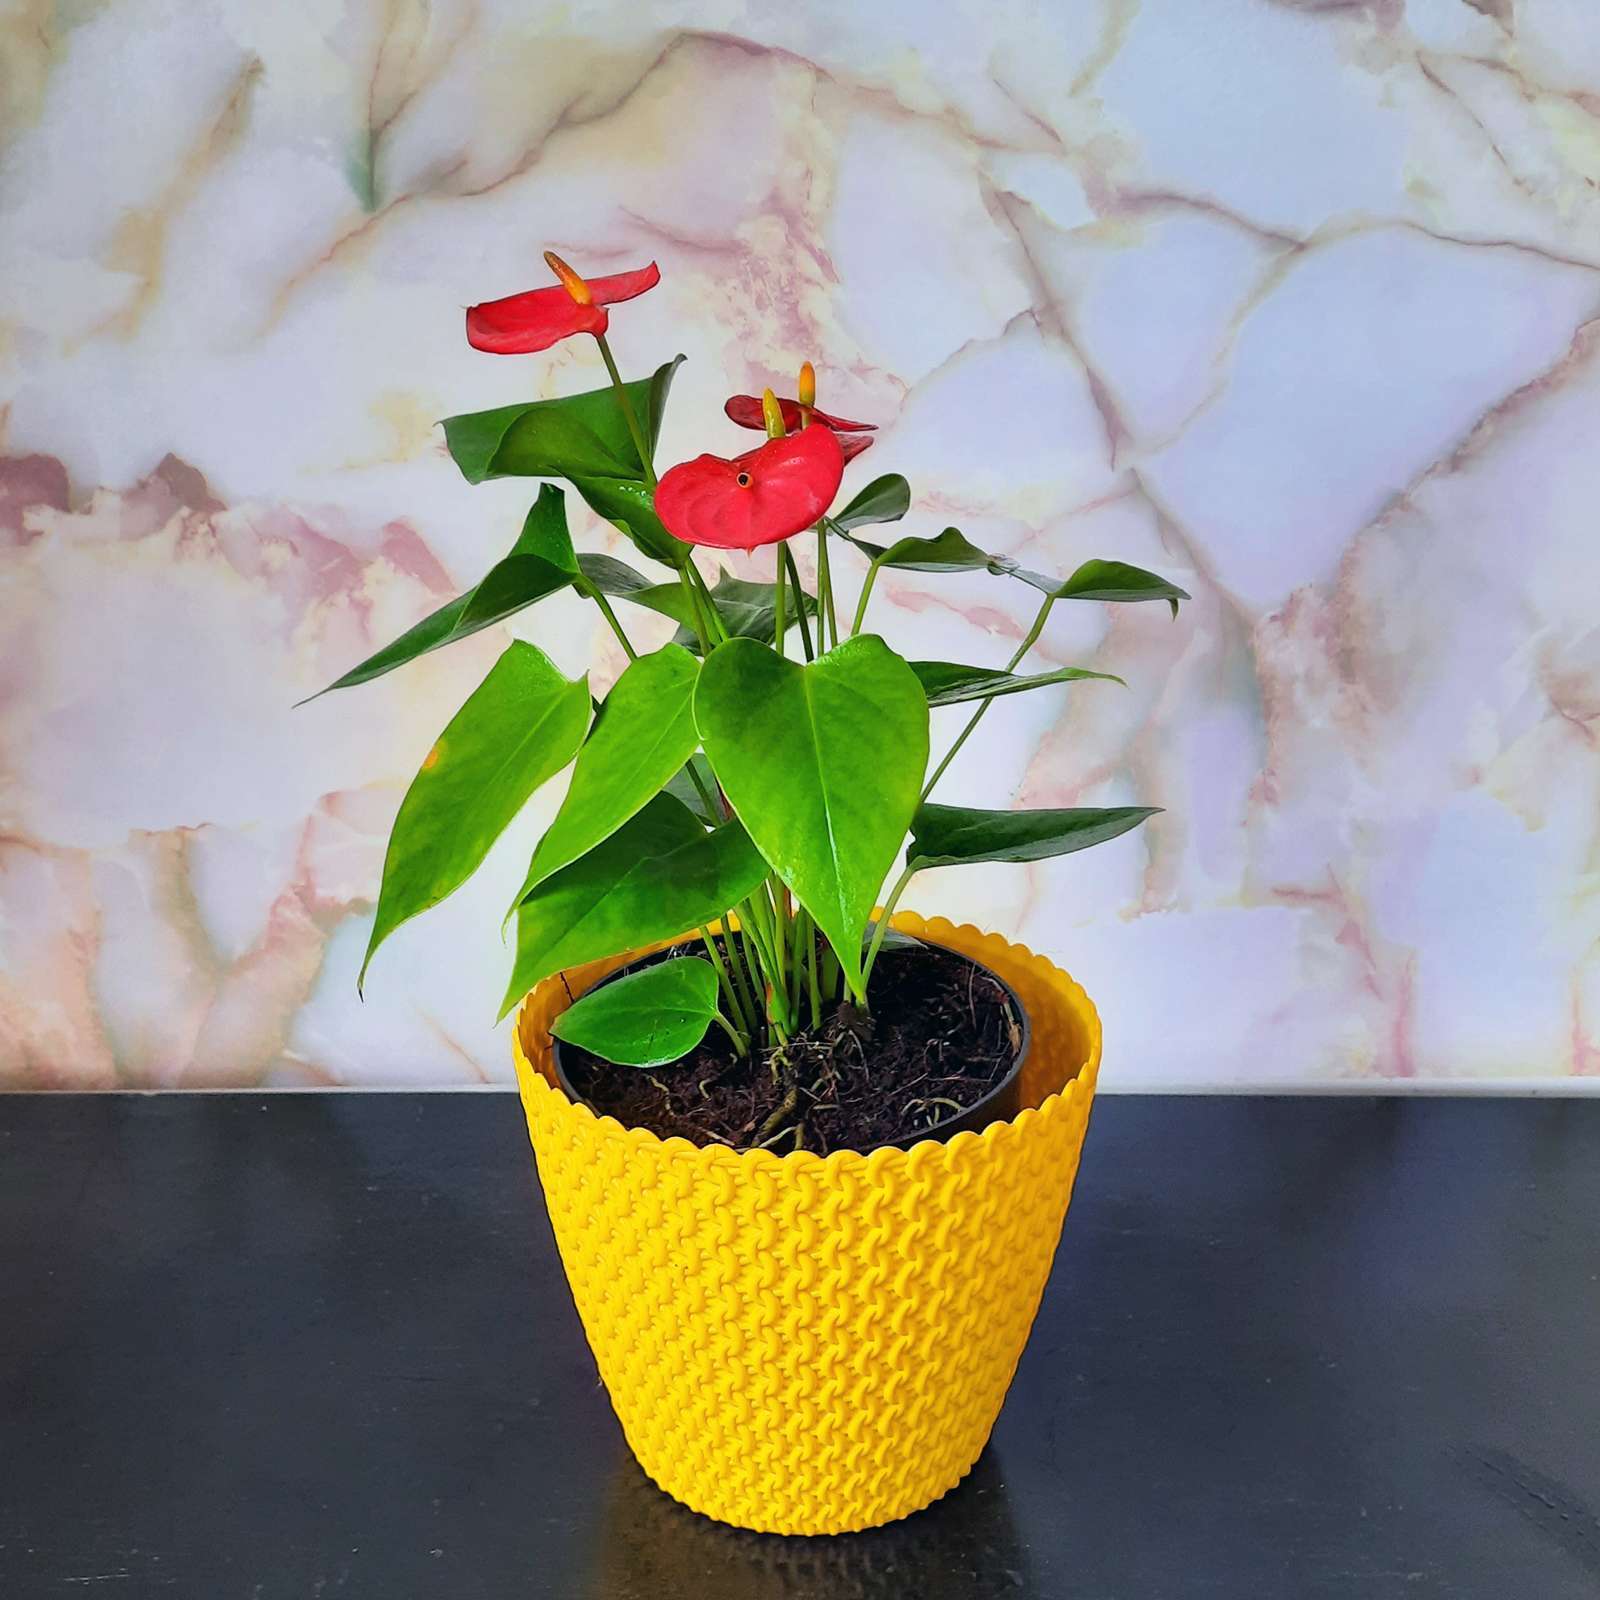 Anthurium – Red Flower